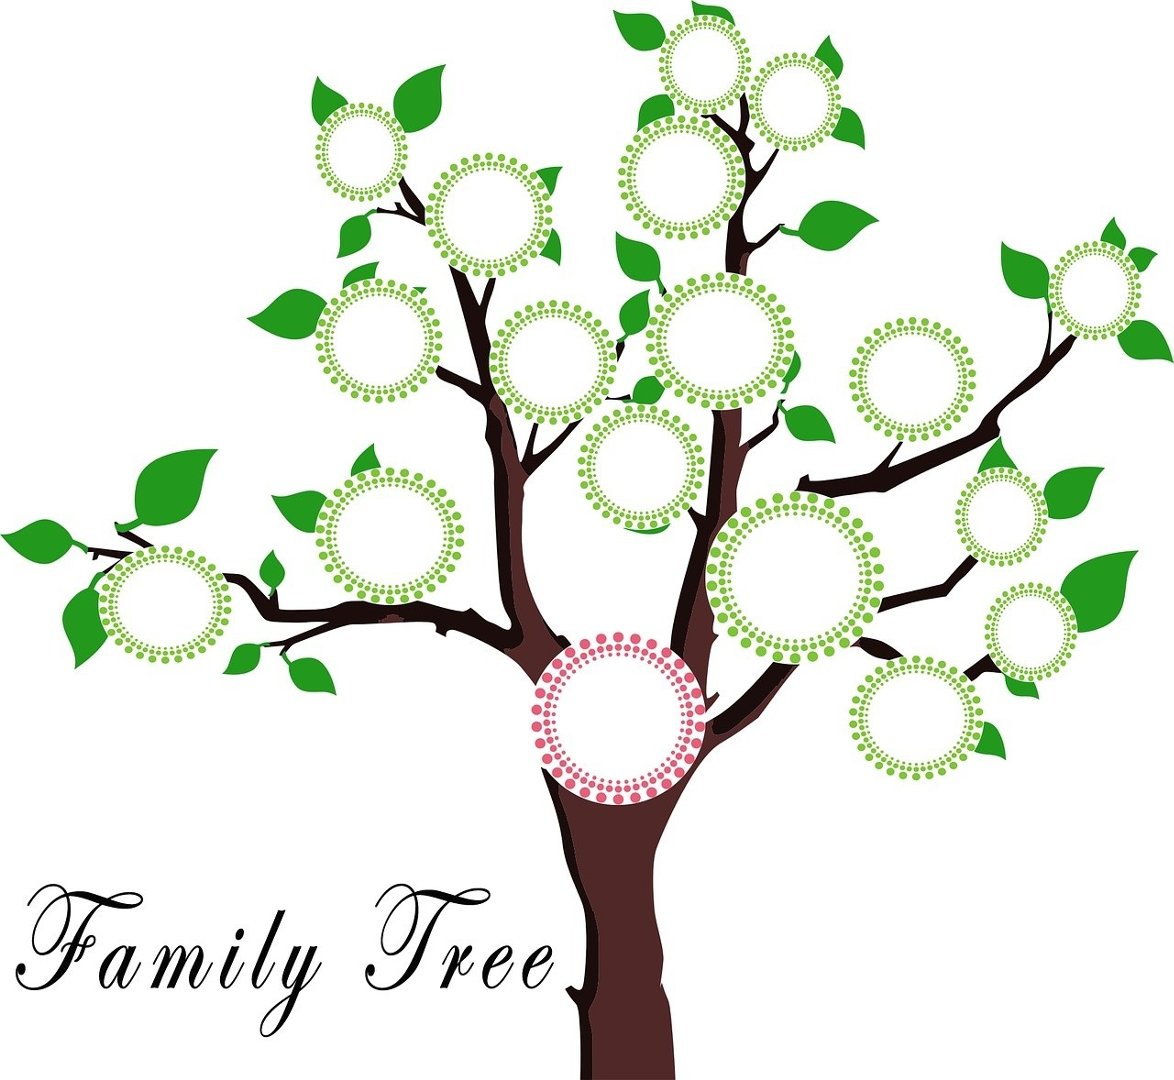 Drzewo Genealogiczne Wzor Jak Narysowac Drzewo Genealogiczne Rodziny 4 03 Express Bydgoski